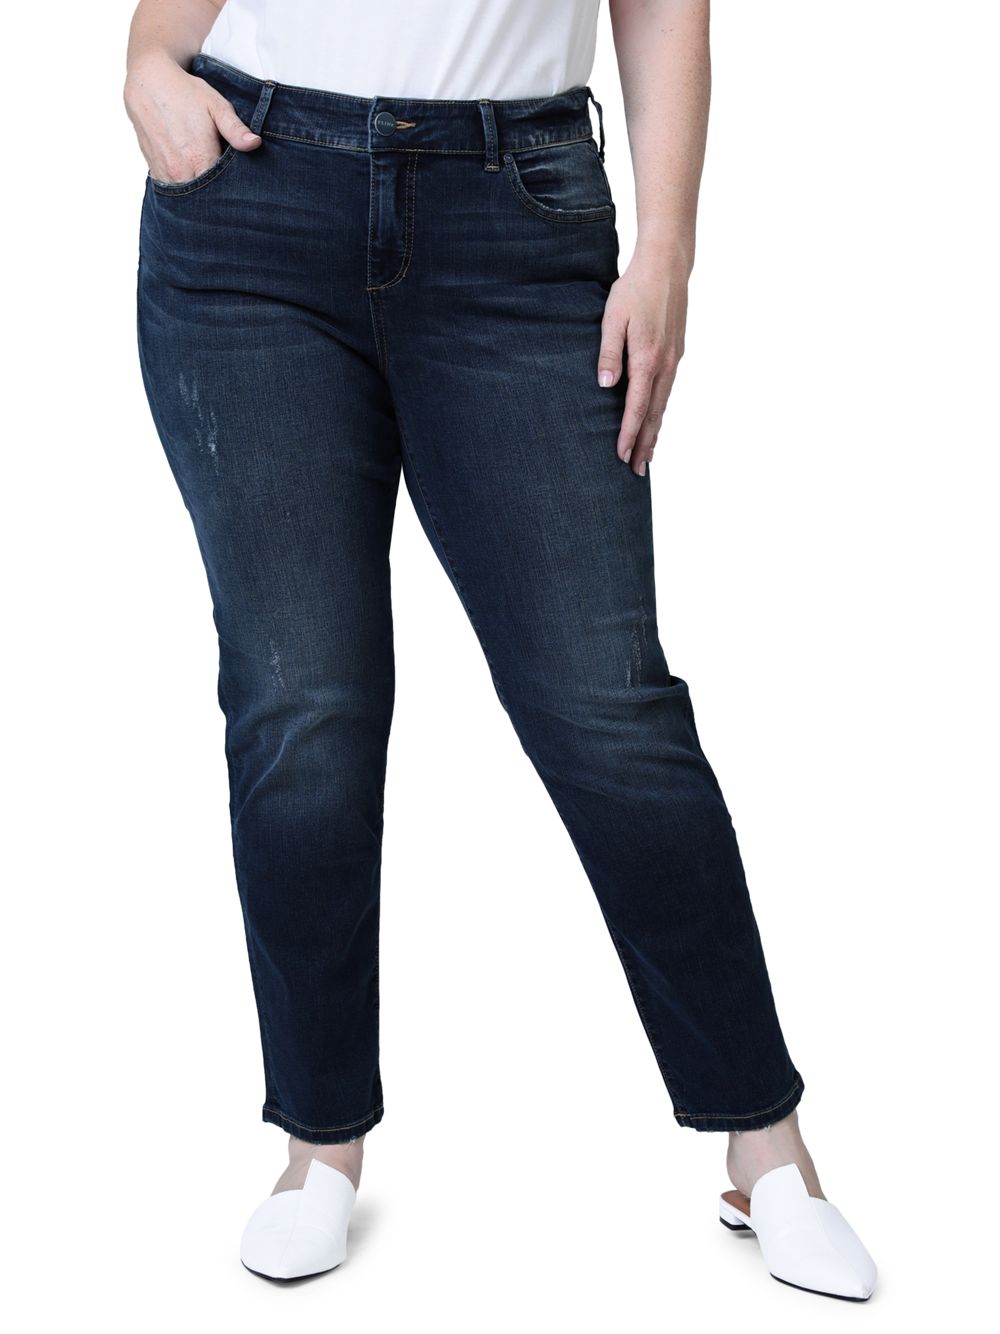 Джинсы узкого кроя со средней посадкой Slink Jeans, Plus Size джинсы бойфренды kennedi со средней посадкой slink jeans plus size цвет kennedi